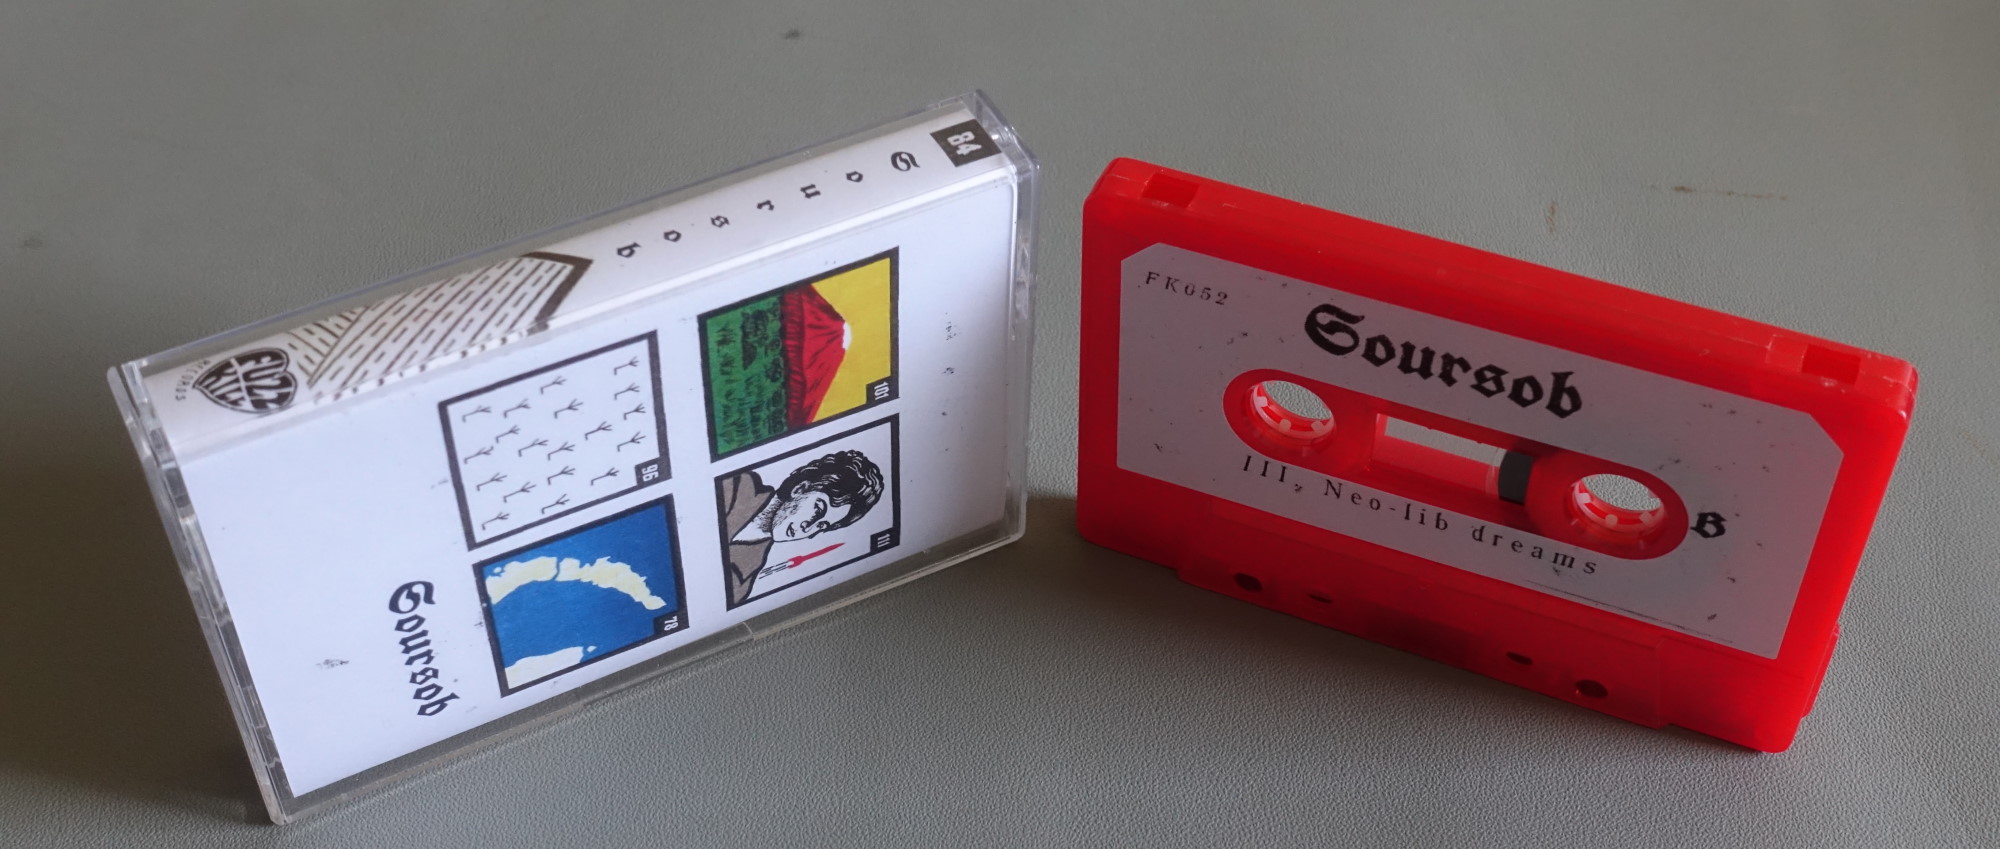 Soursob cassette